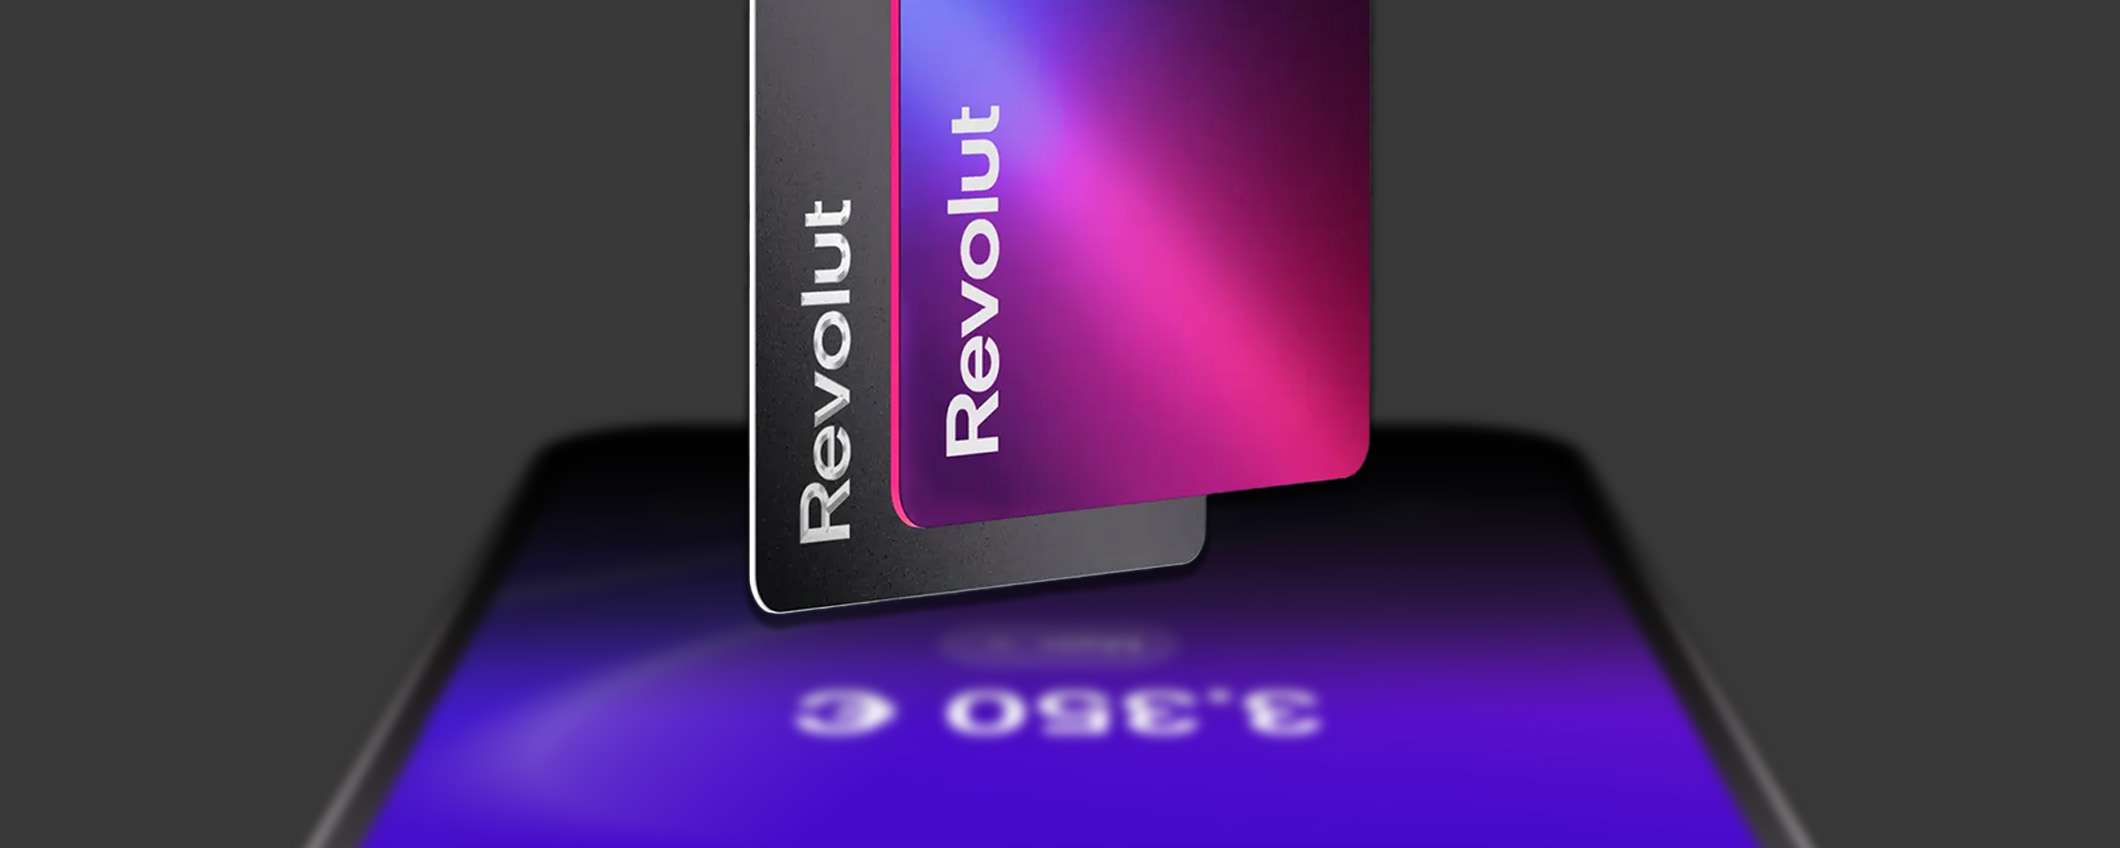 Apri ora Revolut e paga all'instante con il tuo smartphone!